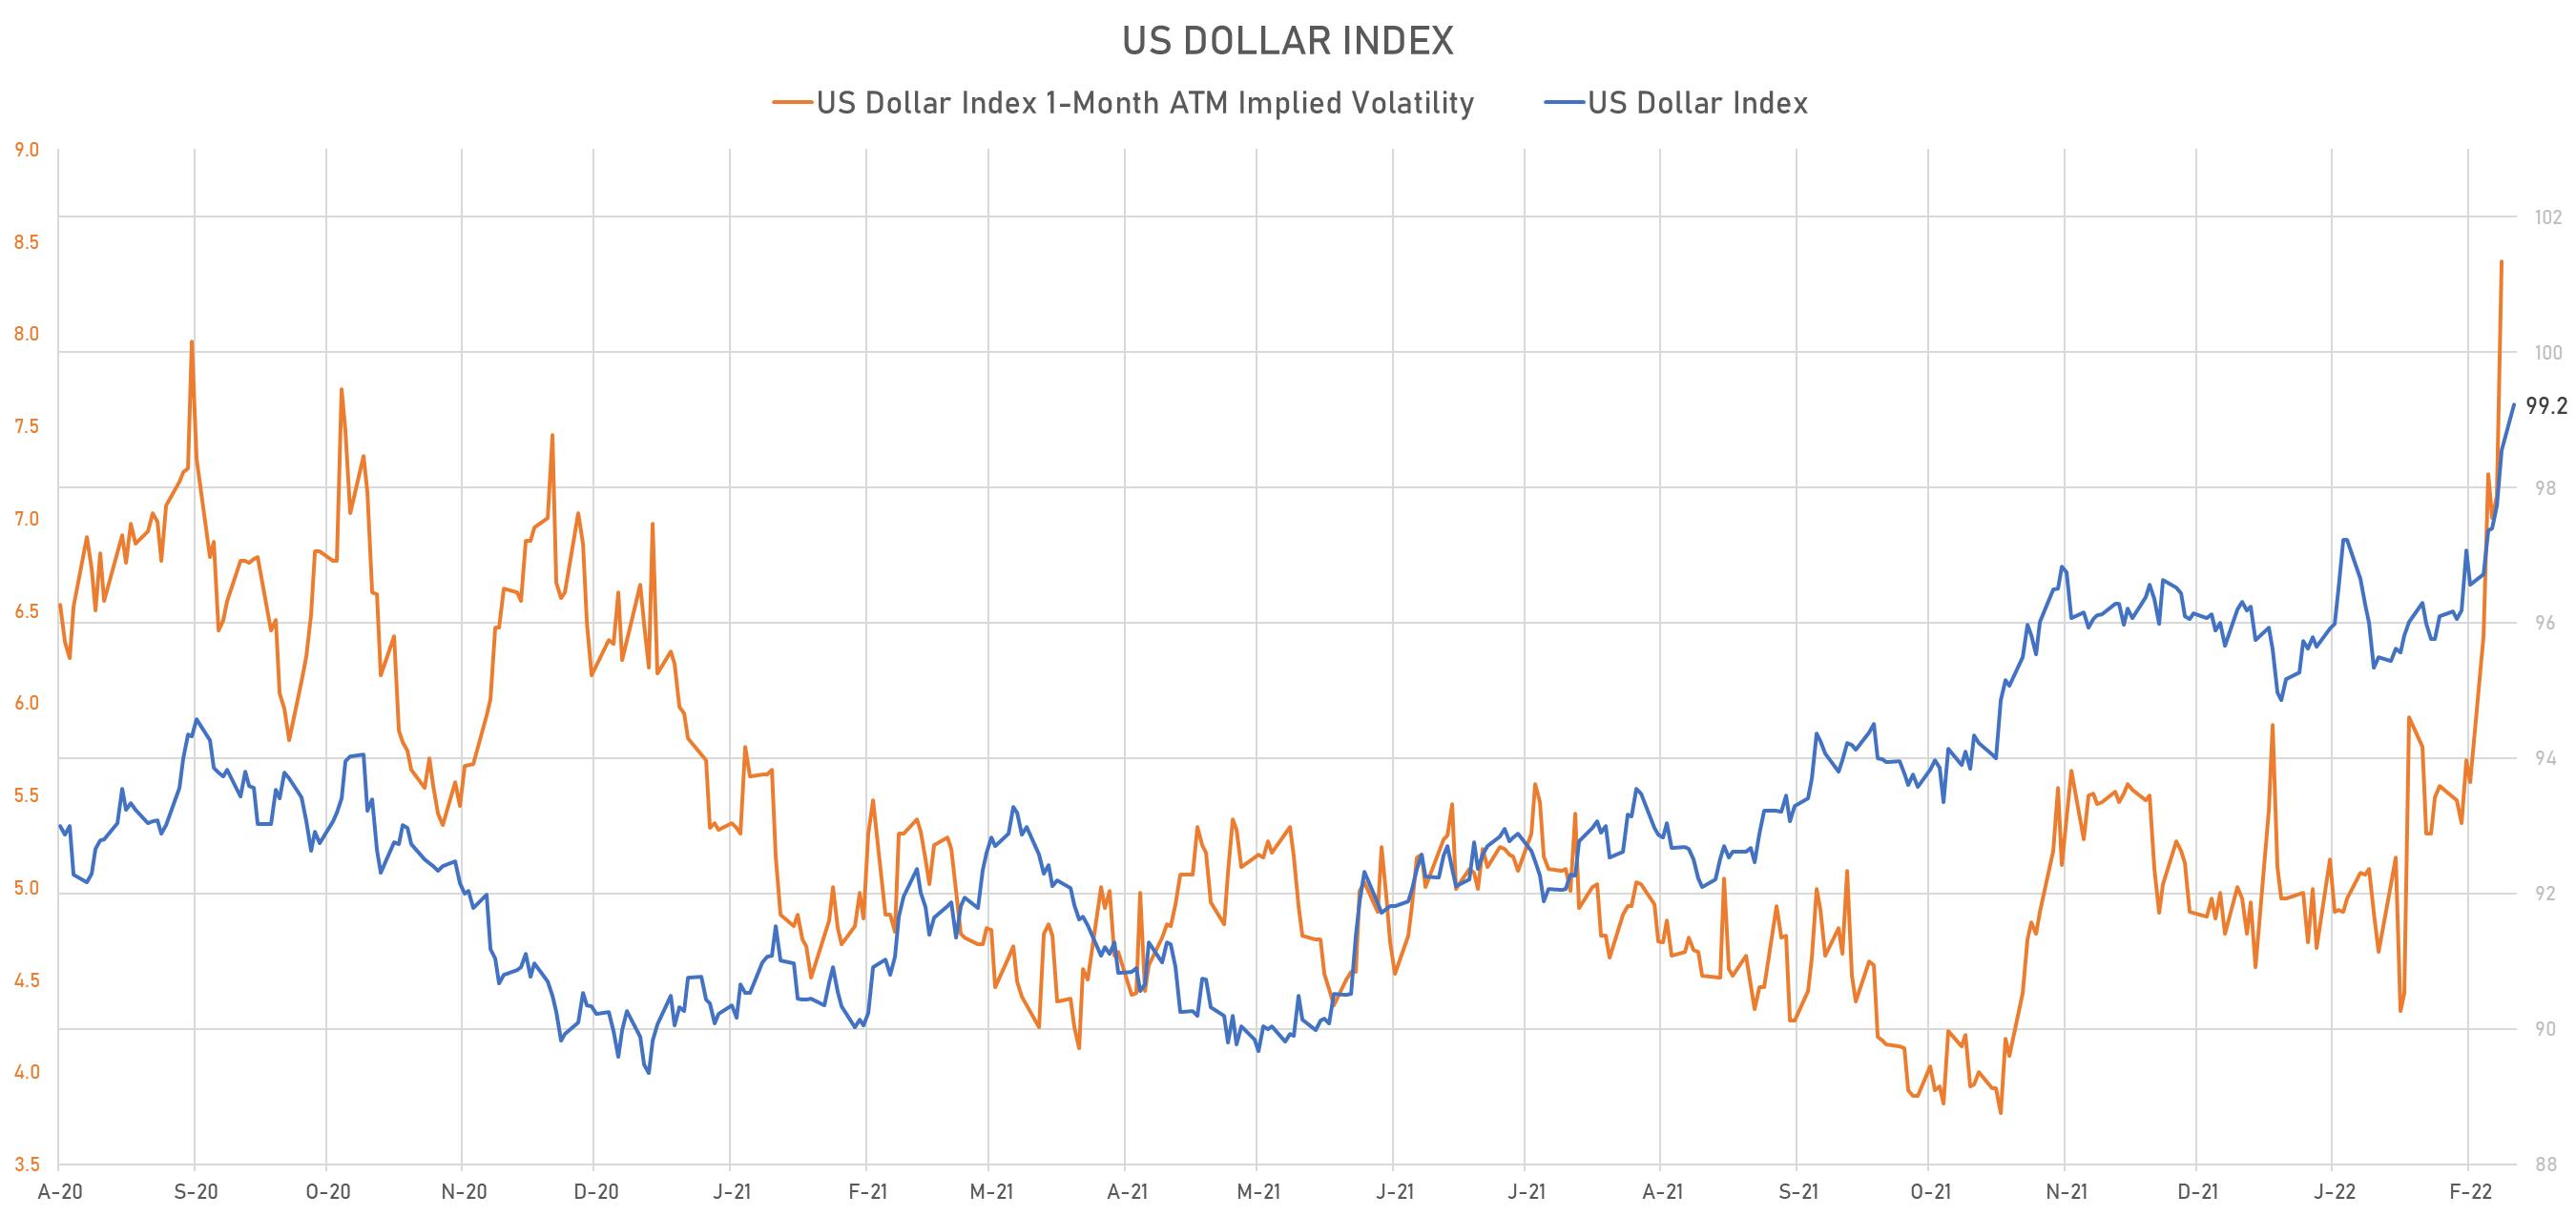 US Dollar Index | Sources: phipost.com, Refinitiv data